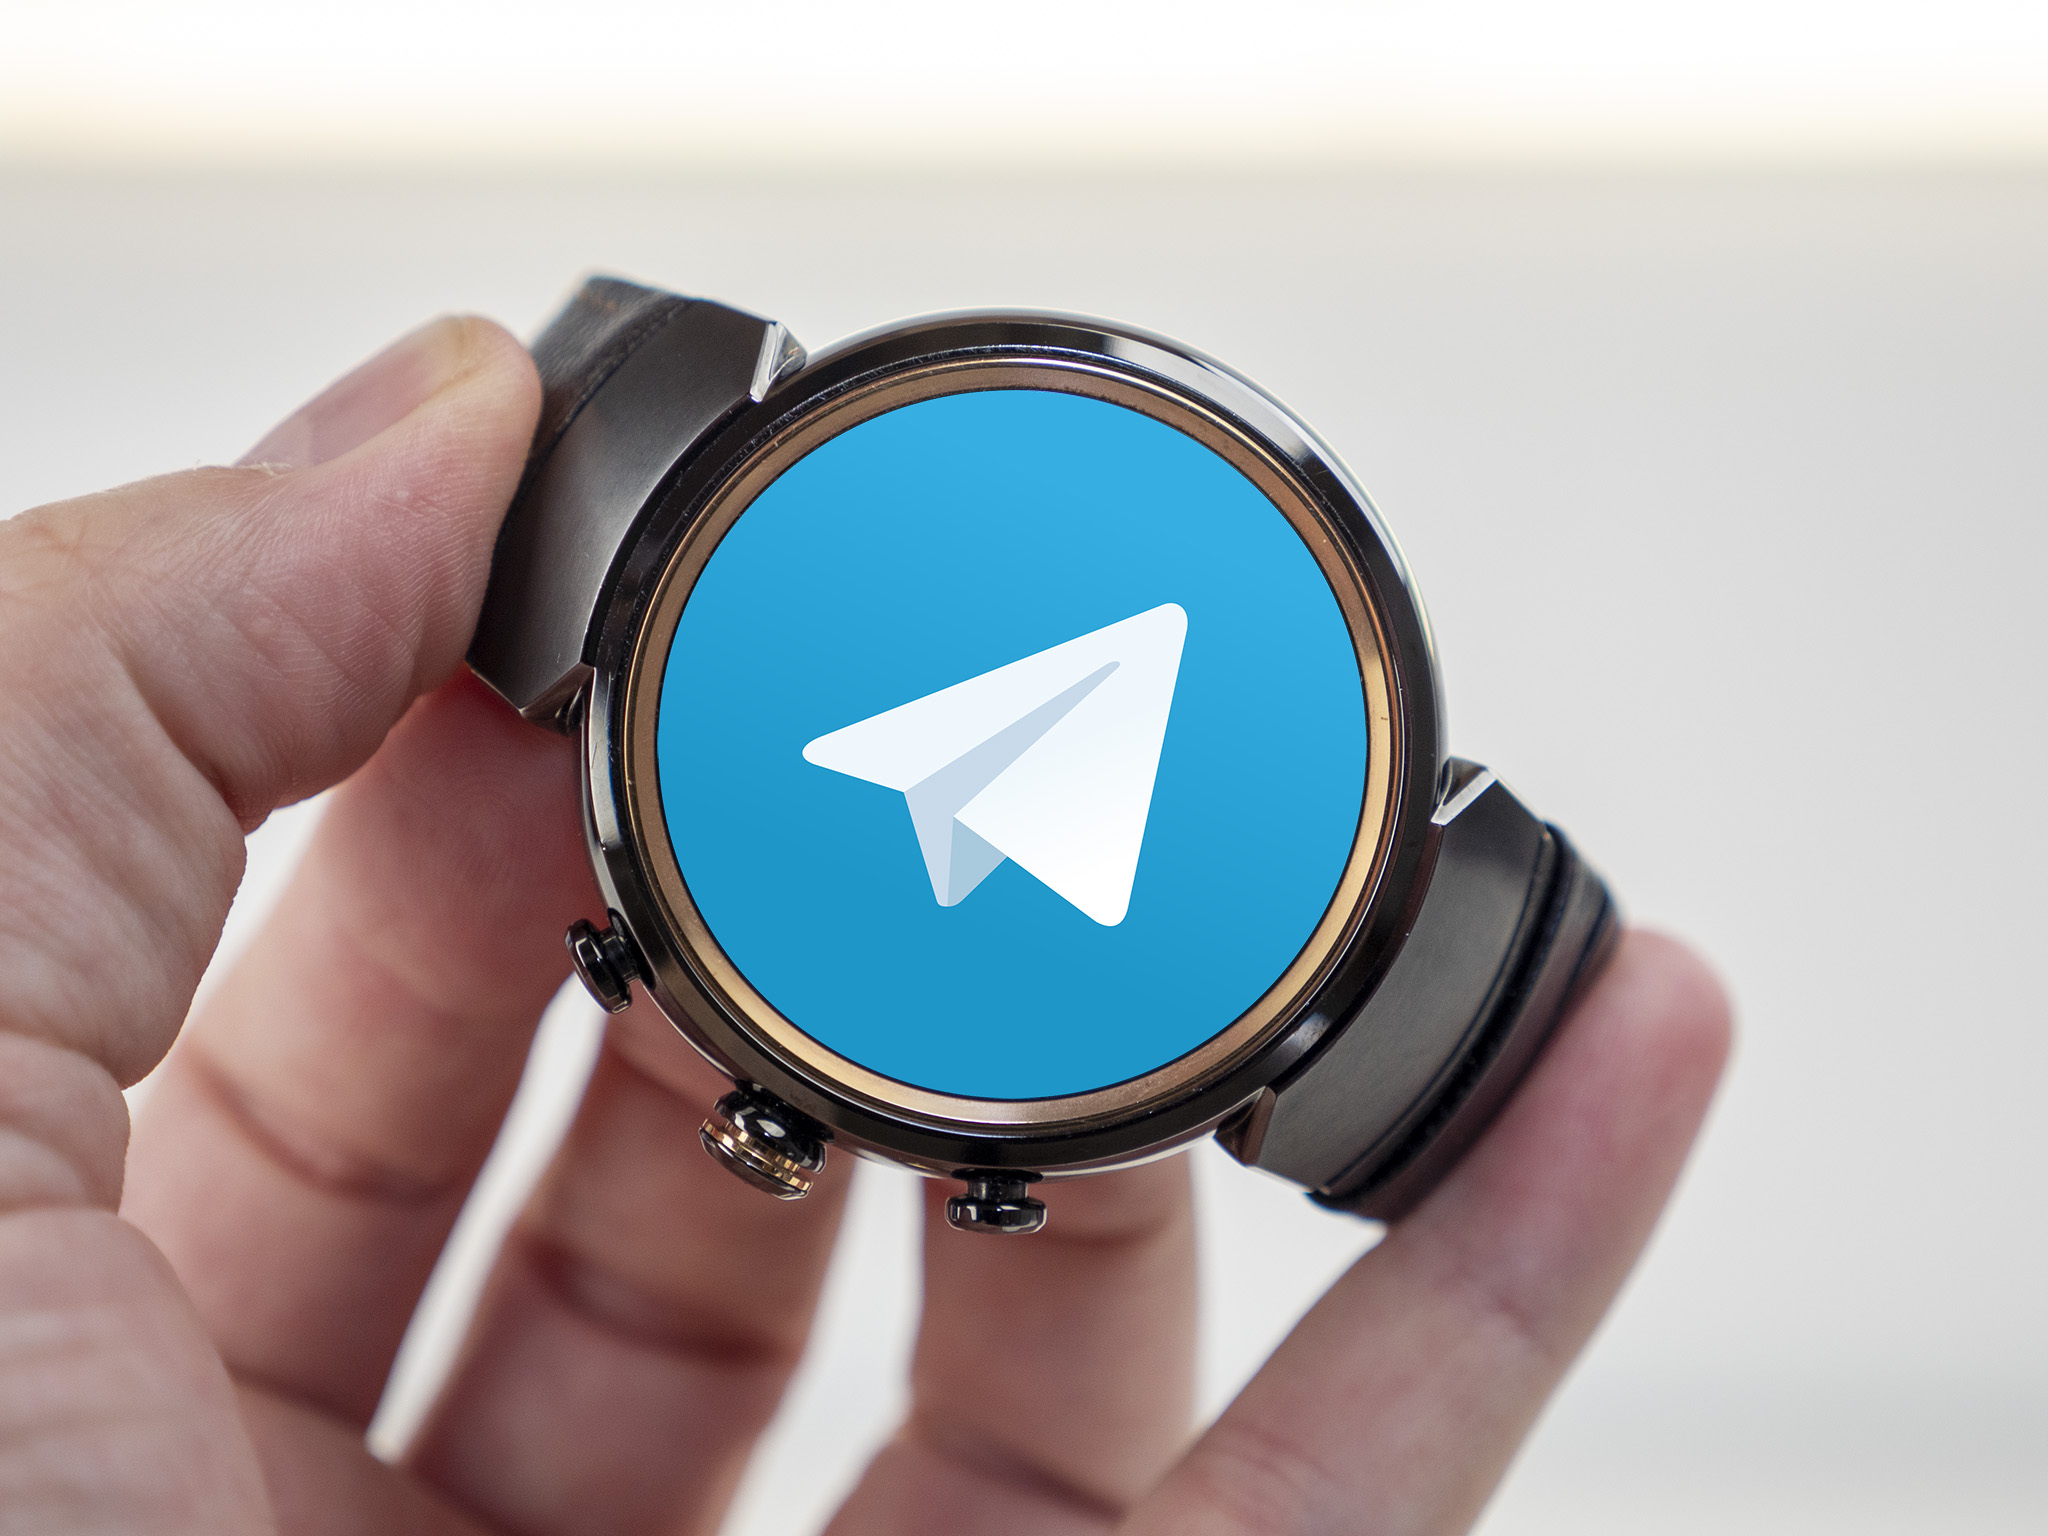 Telegram samsung watch